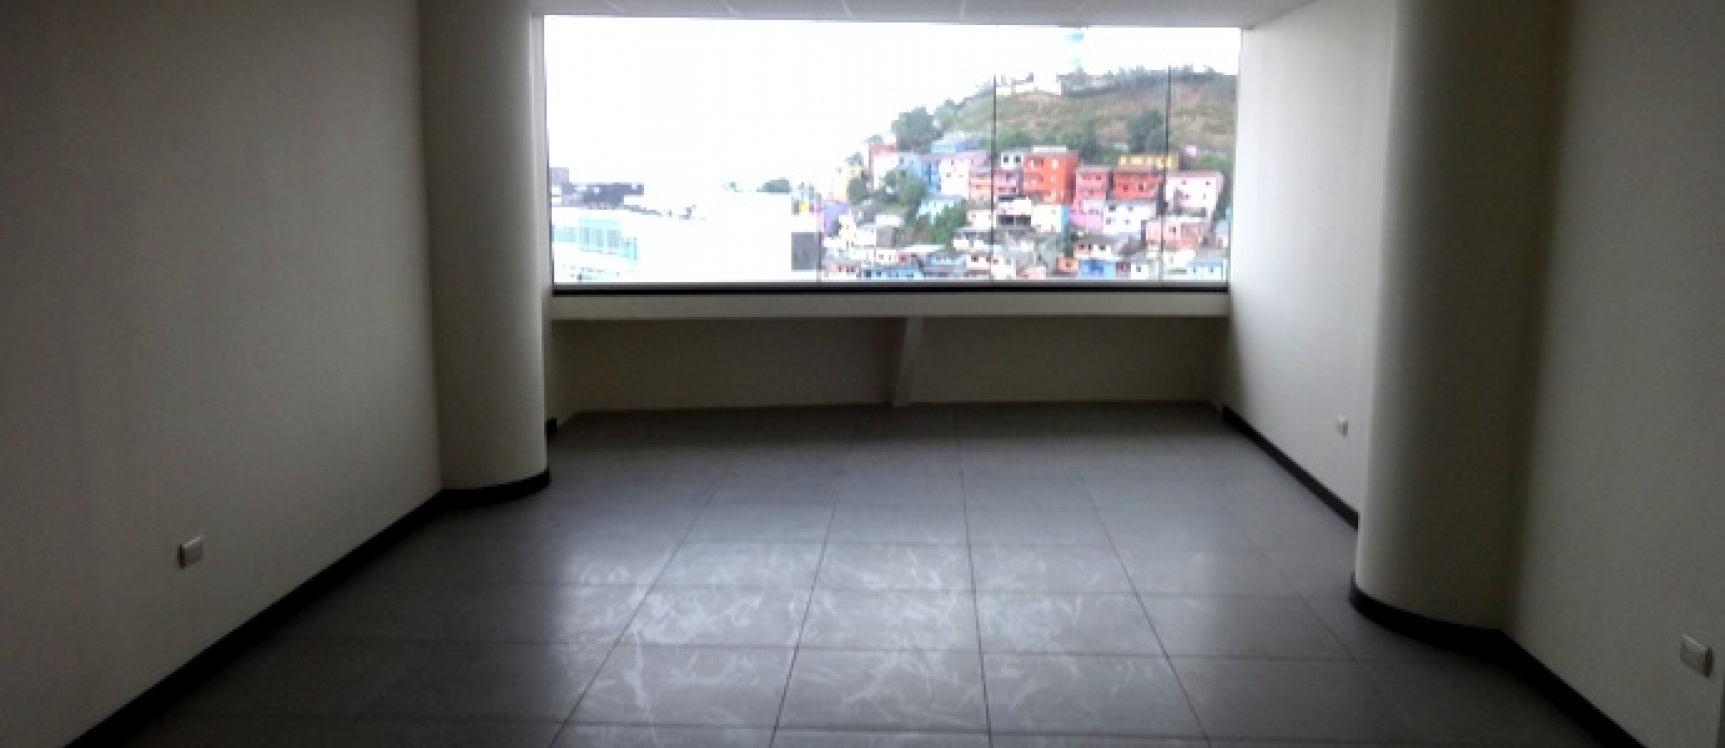 GeoBienes - Oficina en alquiler en The Point, incluye parqueo. Ciudad del Río, Guayaquil - Plusvalia Guayaquil Casas de venta y alquiler Inmobiliaria Ecuador